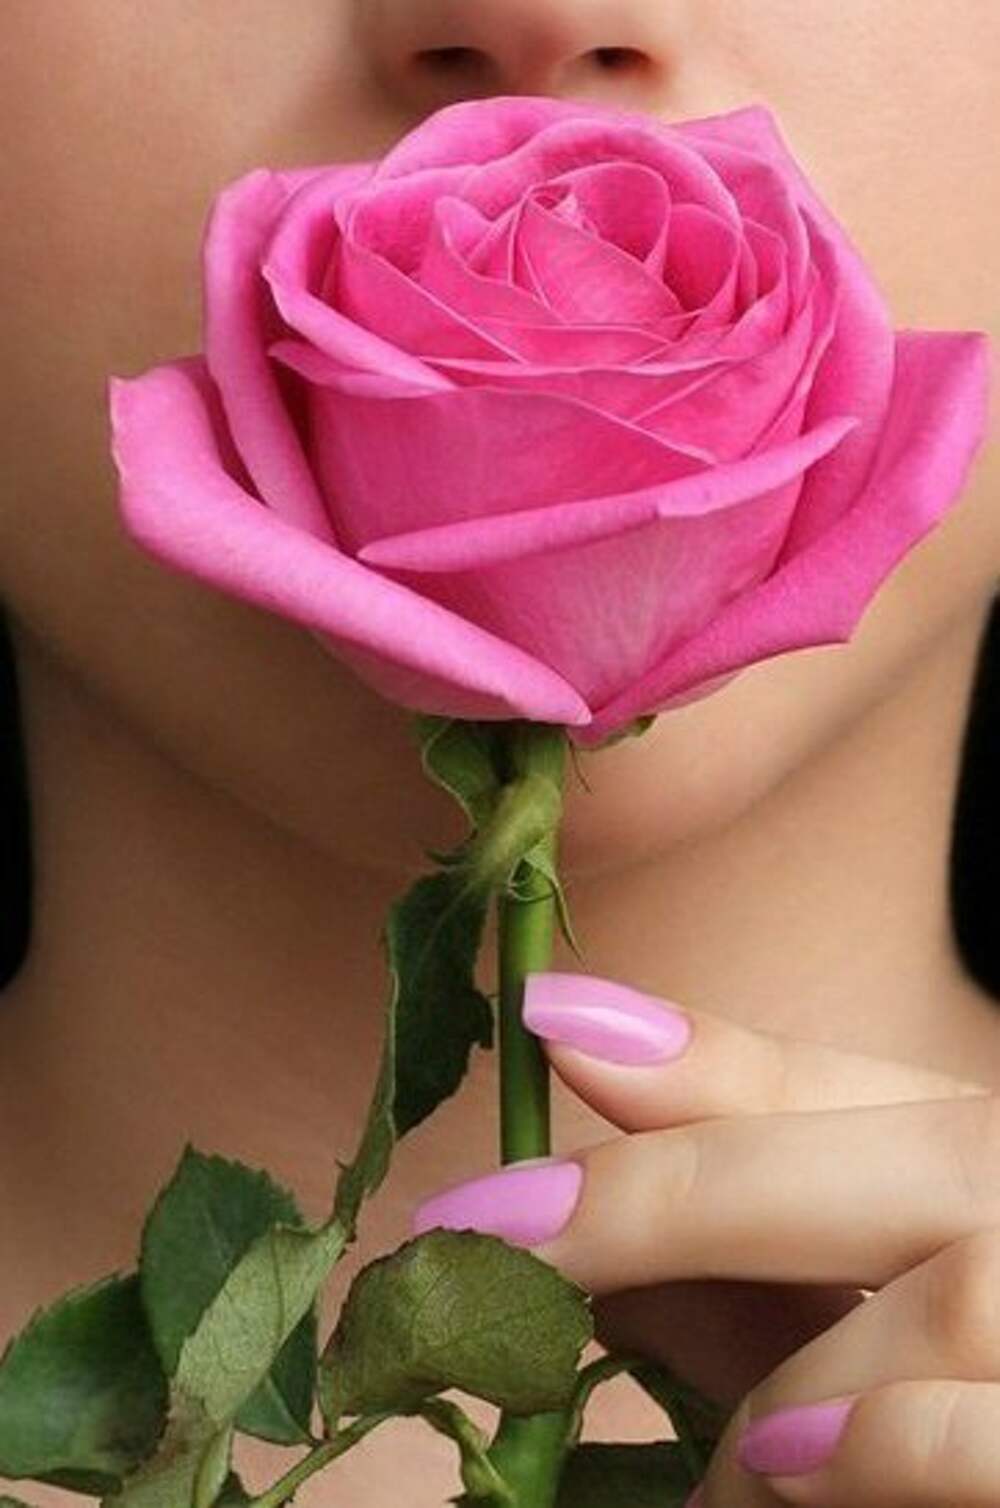 Аватарки цветочки. Фотосессия с розами. Картинки на аватарку для девушек. Девушка с розовыми розами. Цветочки для девушки.